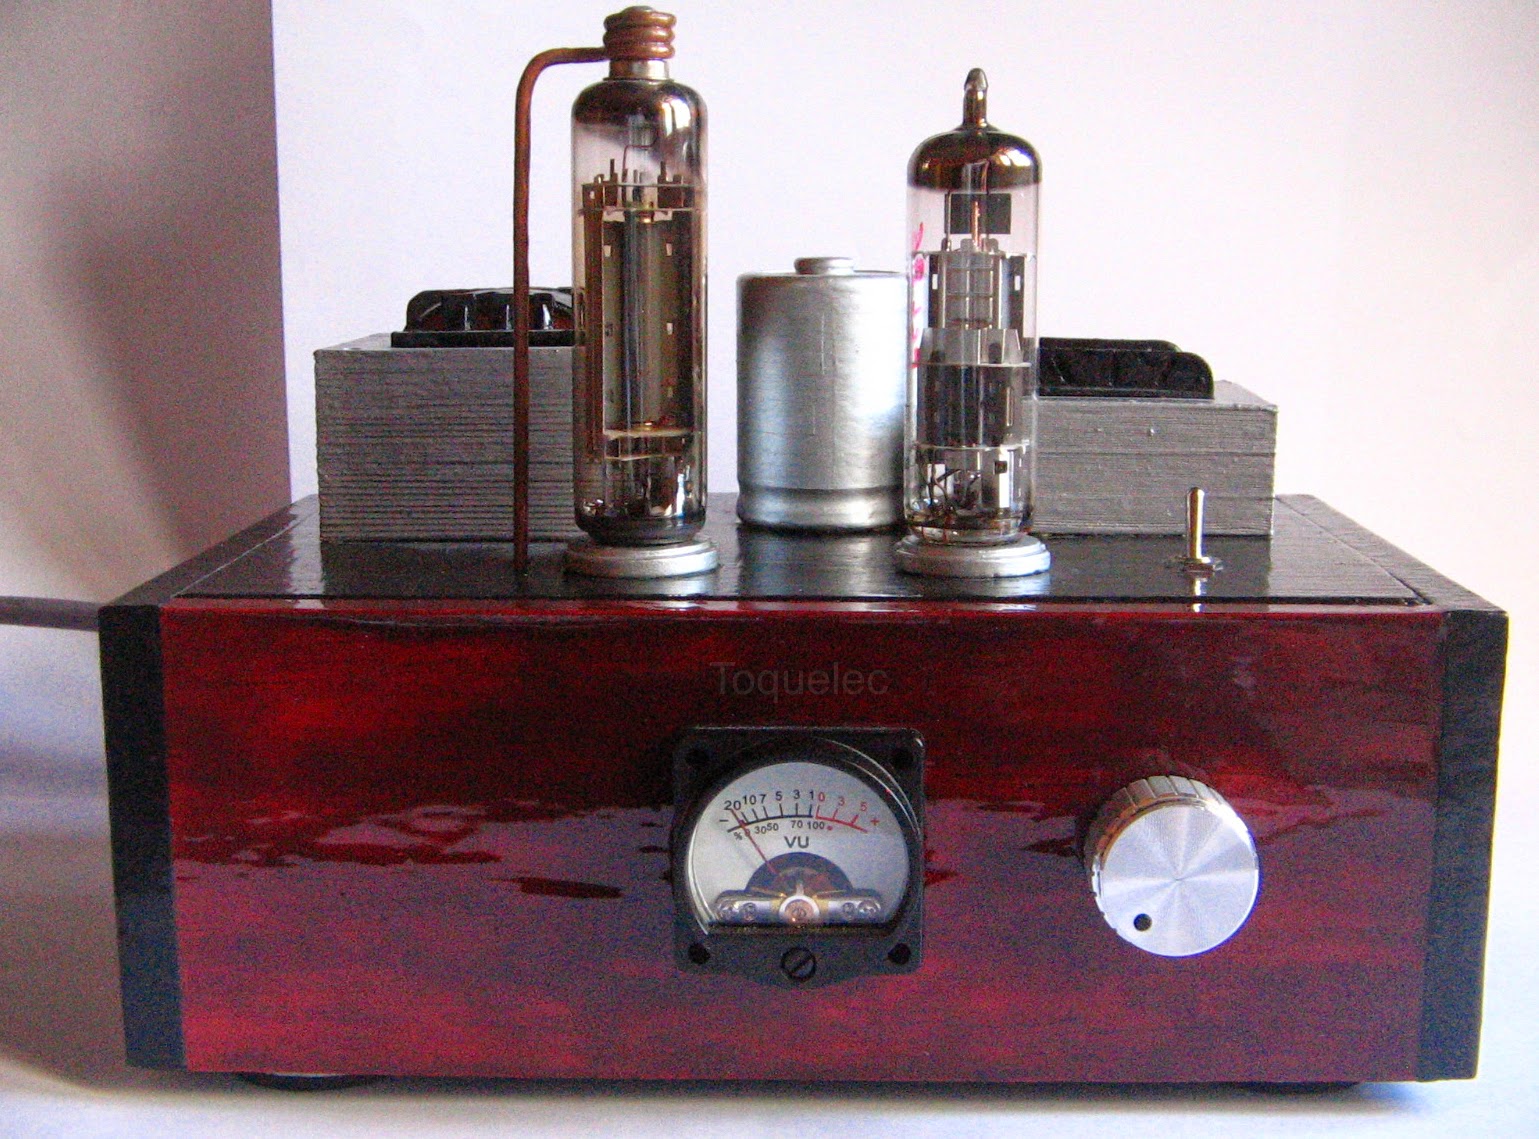 La ciencia de Toquelec: Construcción de un amplificador de sonido